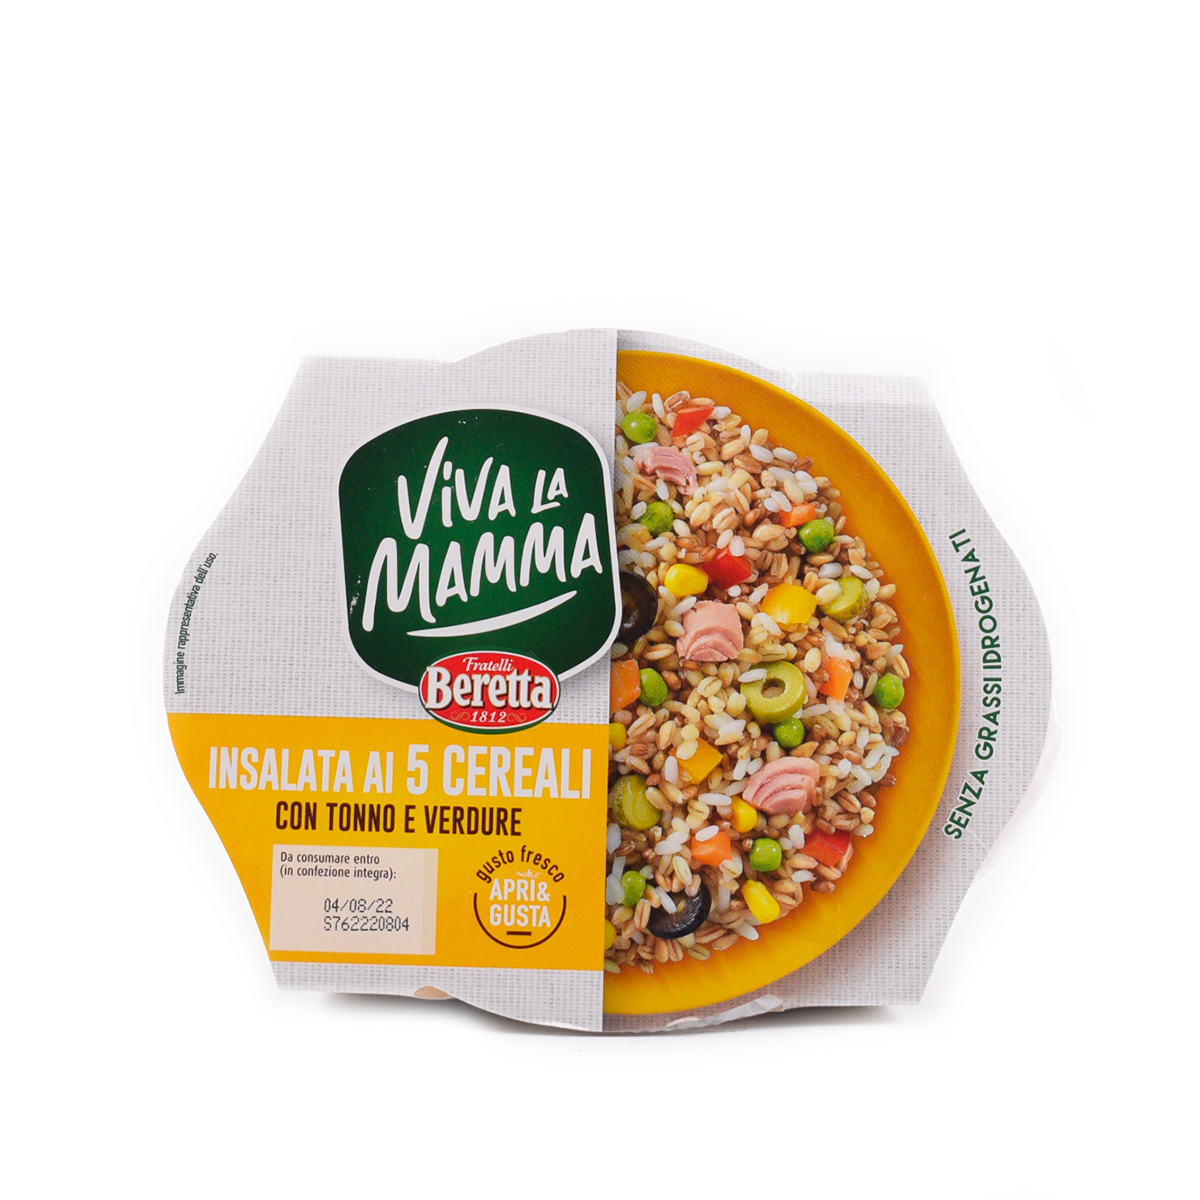 Beretta Viva la Mamma, Insalata ai 5 Cereali 400g